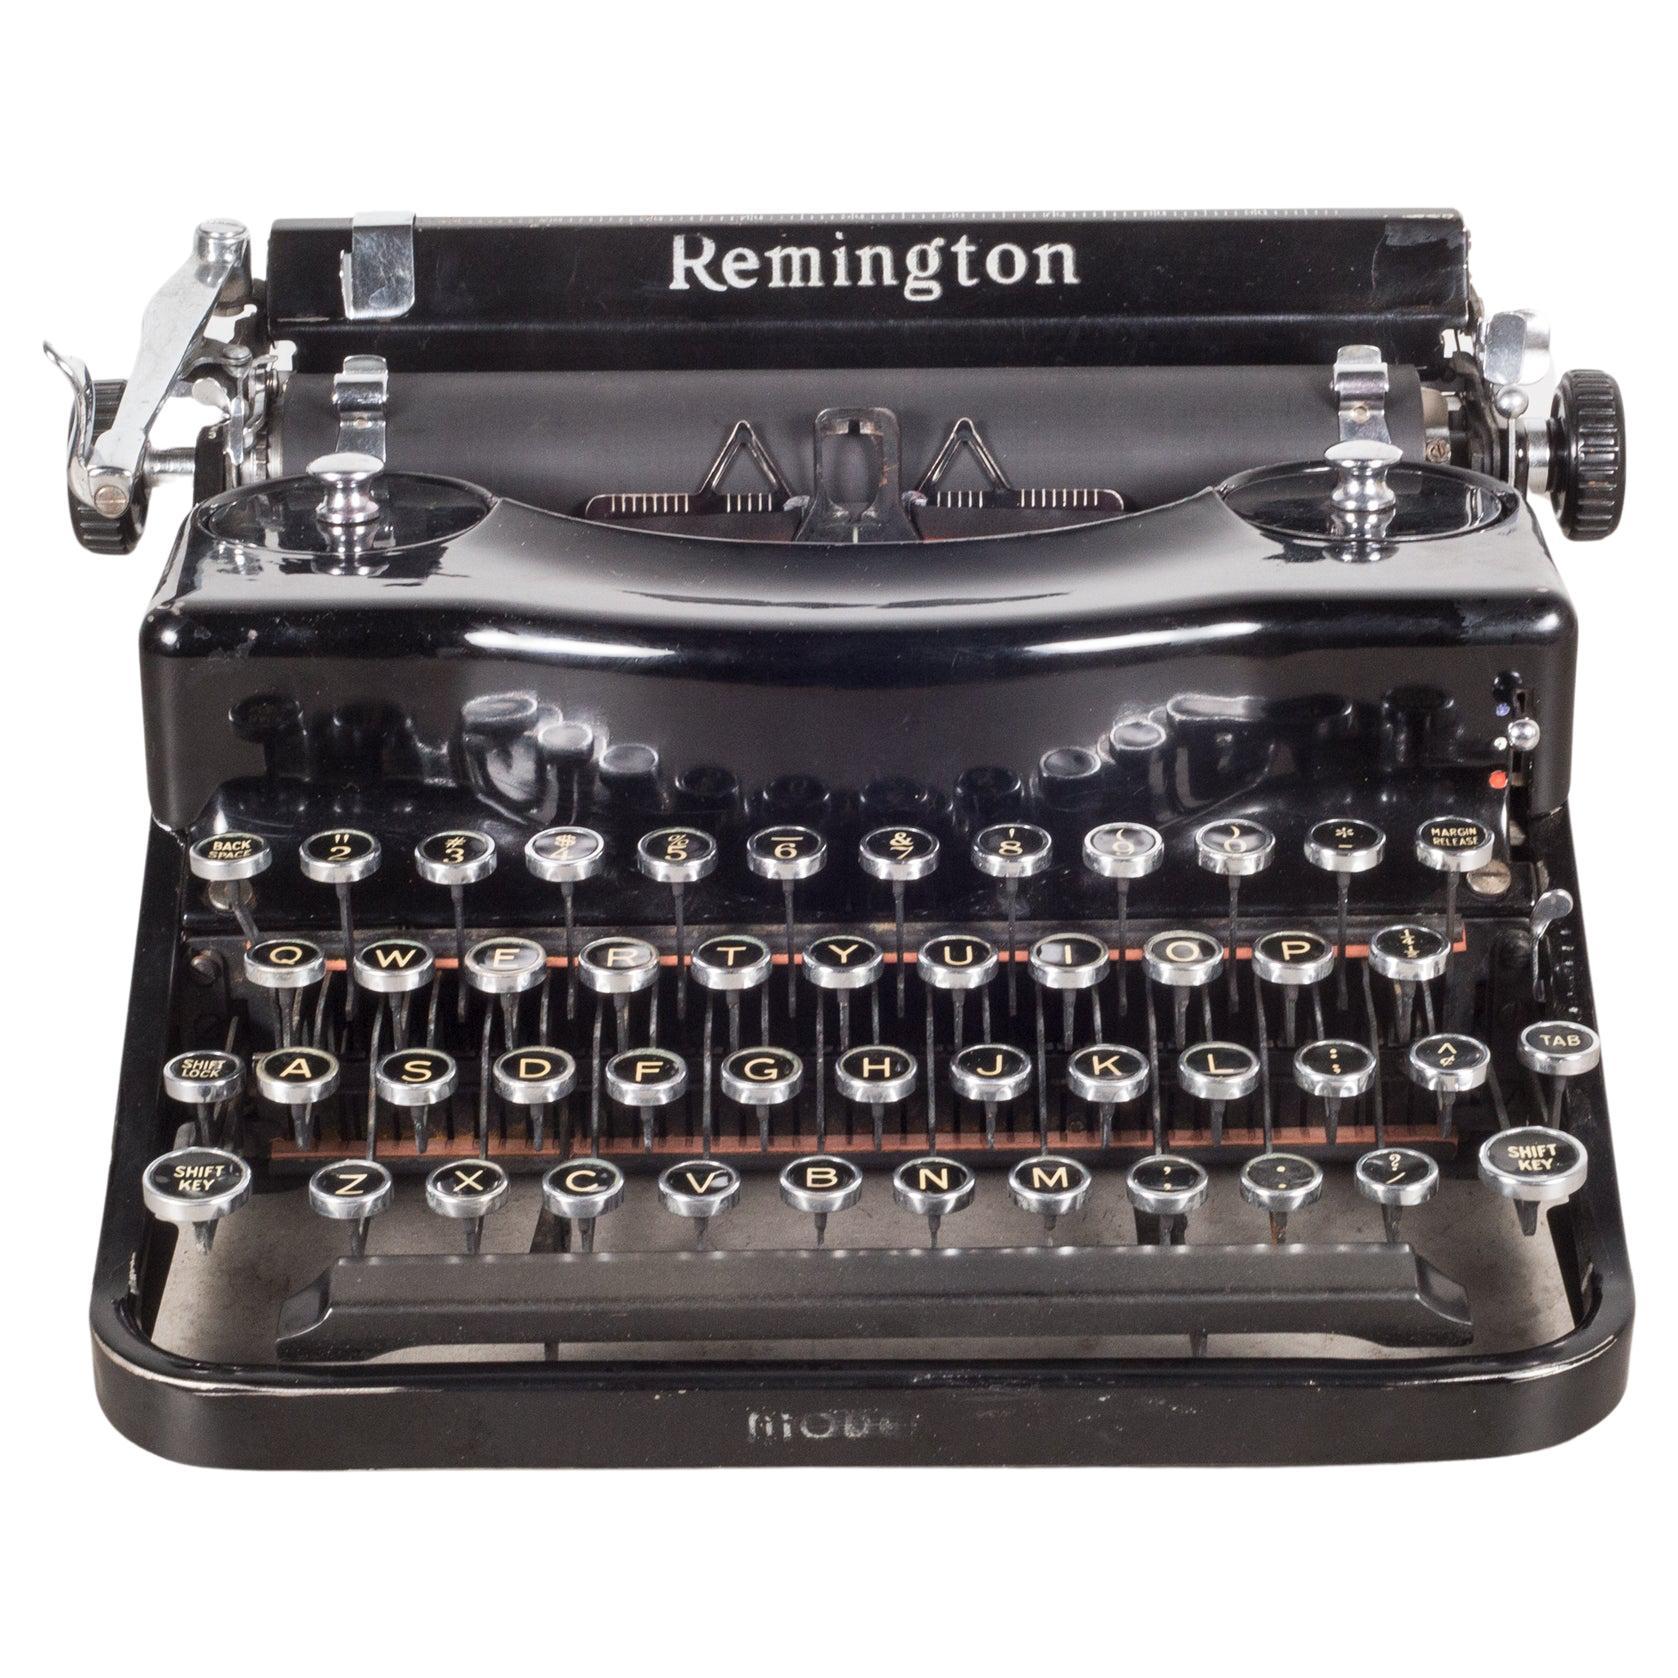 Fully Refurbished Remington Model 1 Typewriter, c.1938